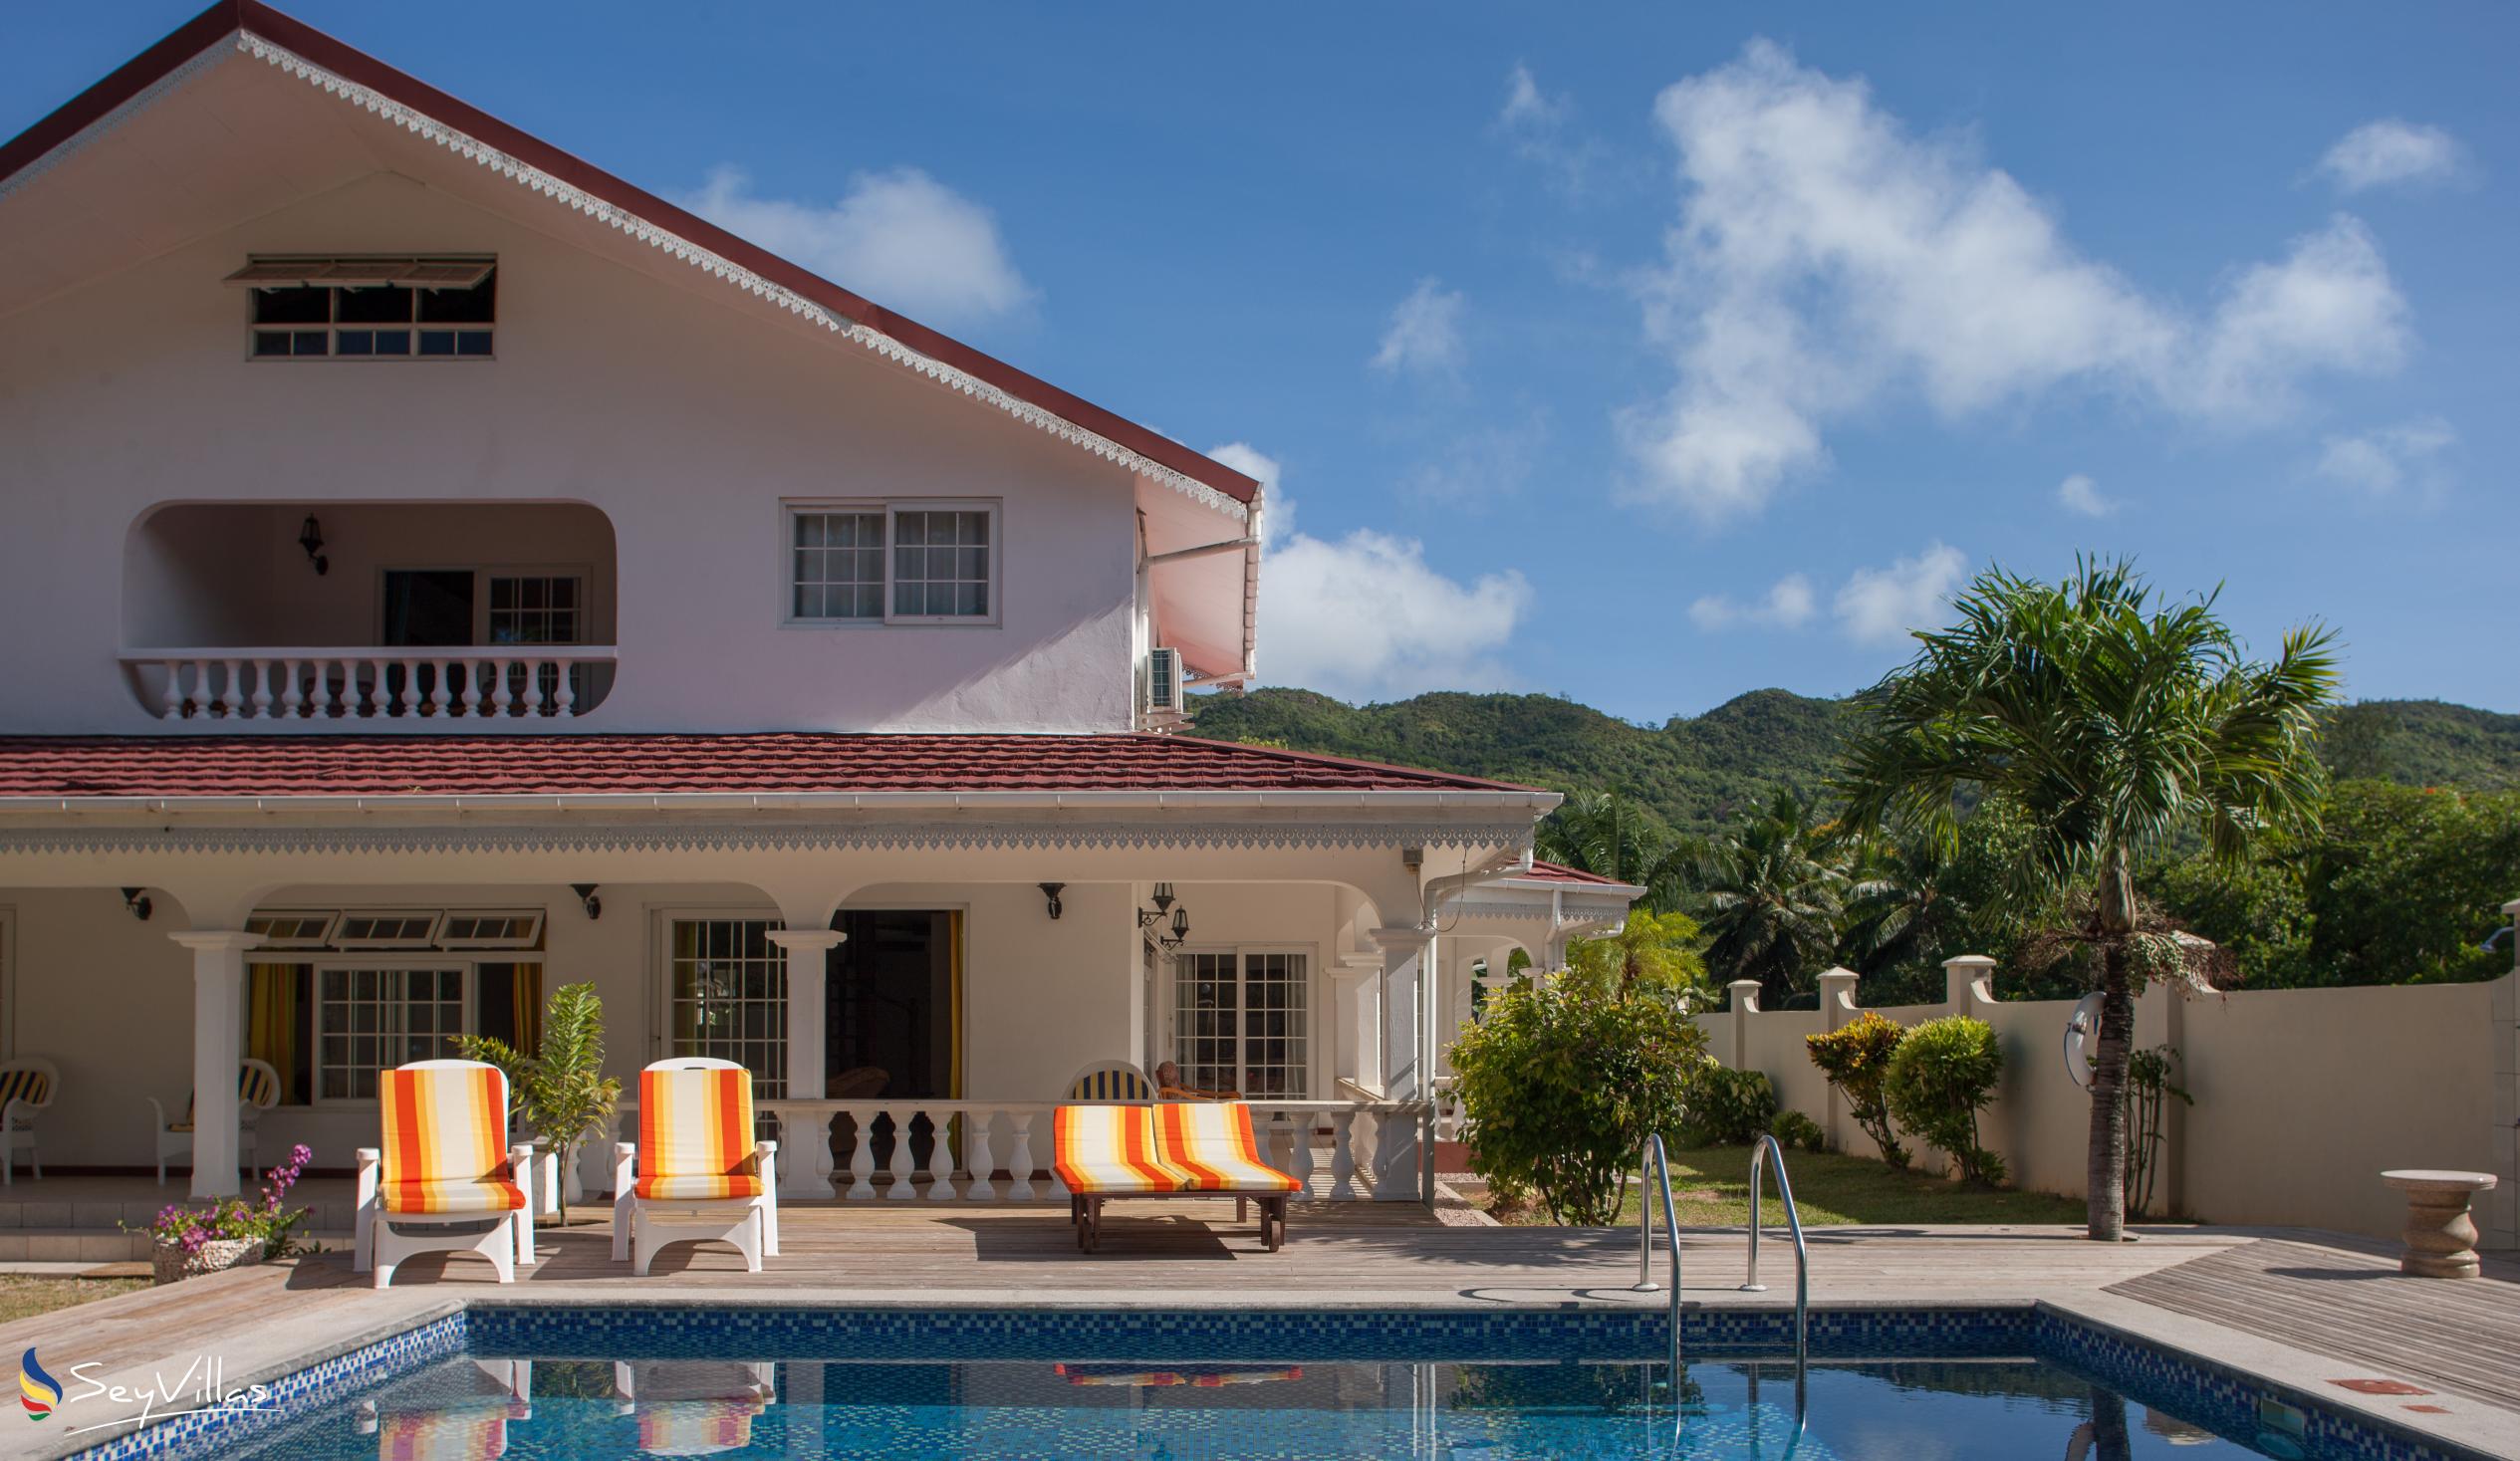 Photo 3: Villa Confort - Outdoor area - Praslin (Seychelles)